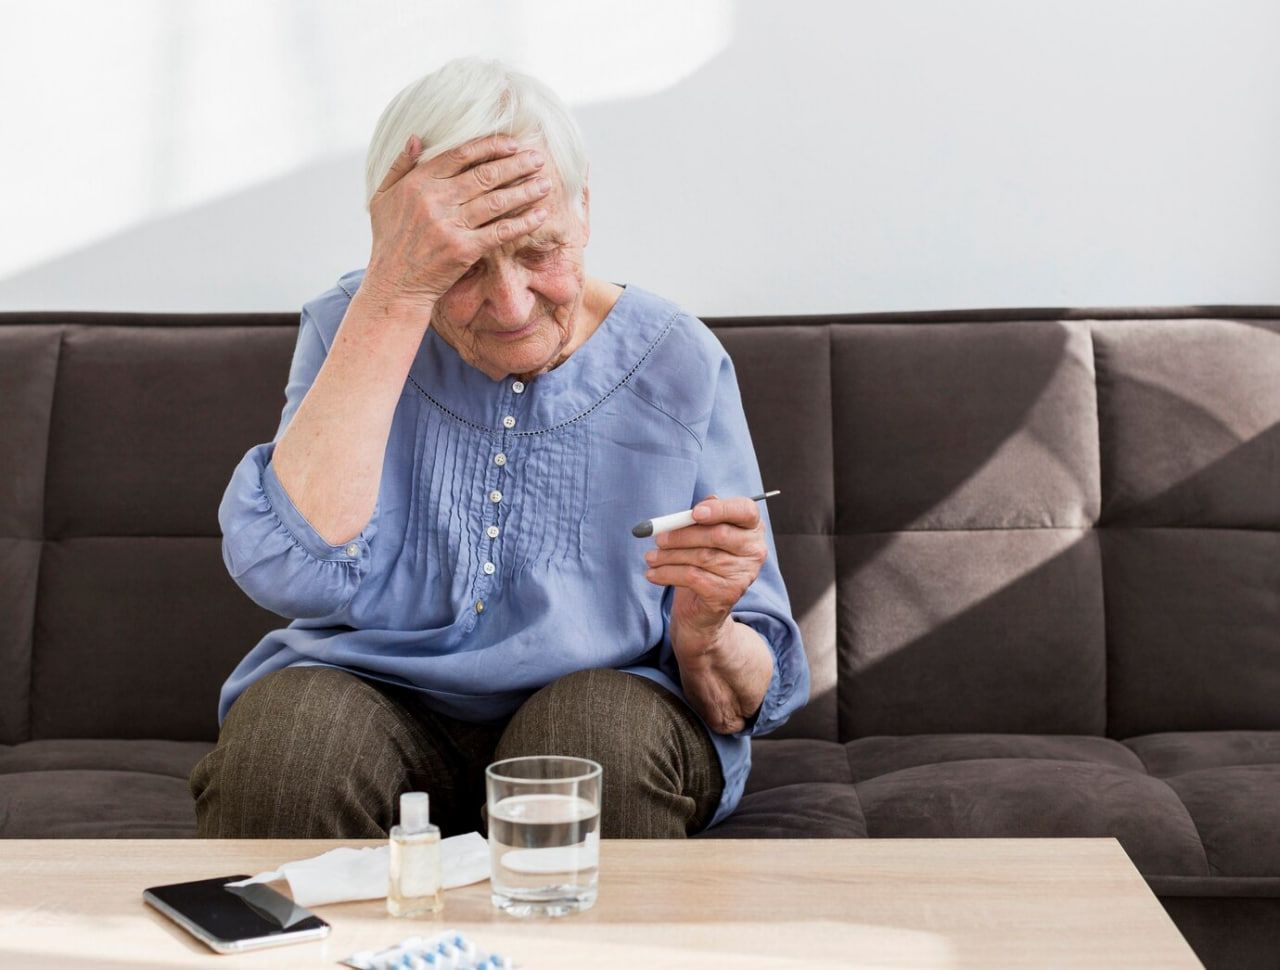 Здоровье пенсионера: 6 правил, как обезопасить себя в сезон инфекций